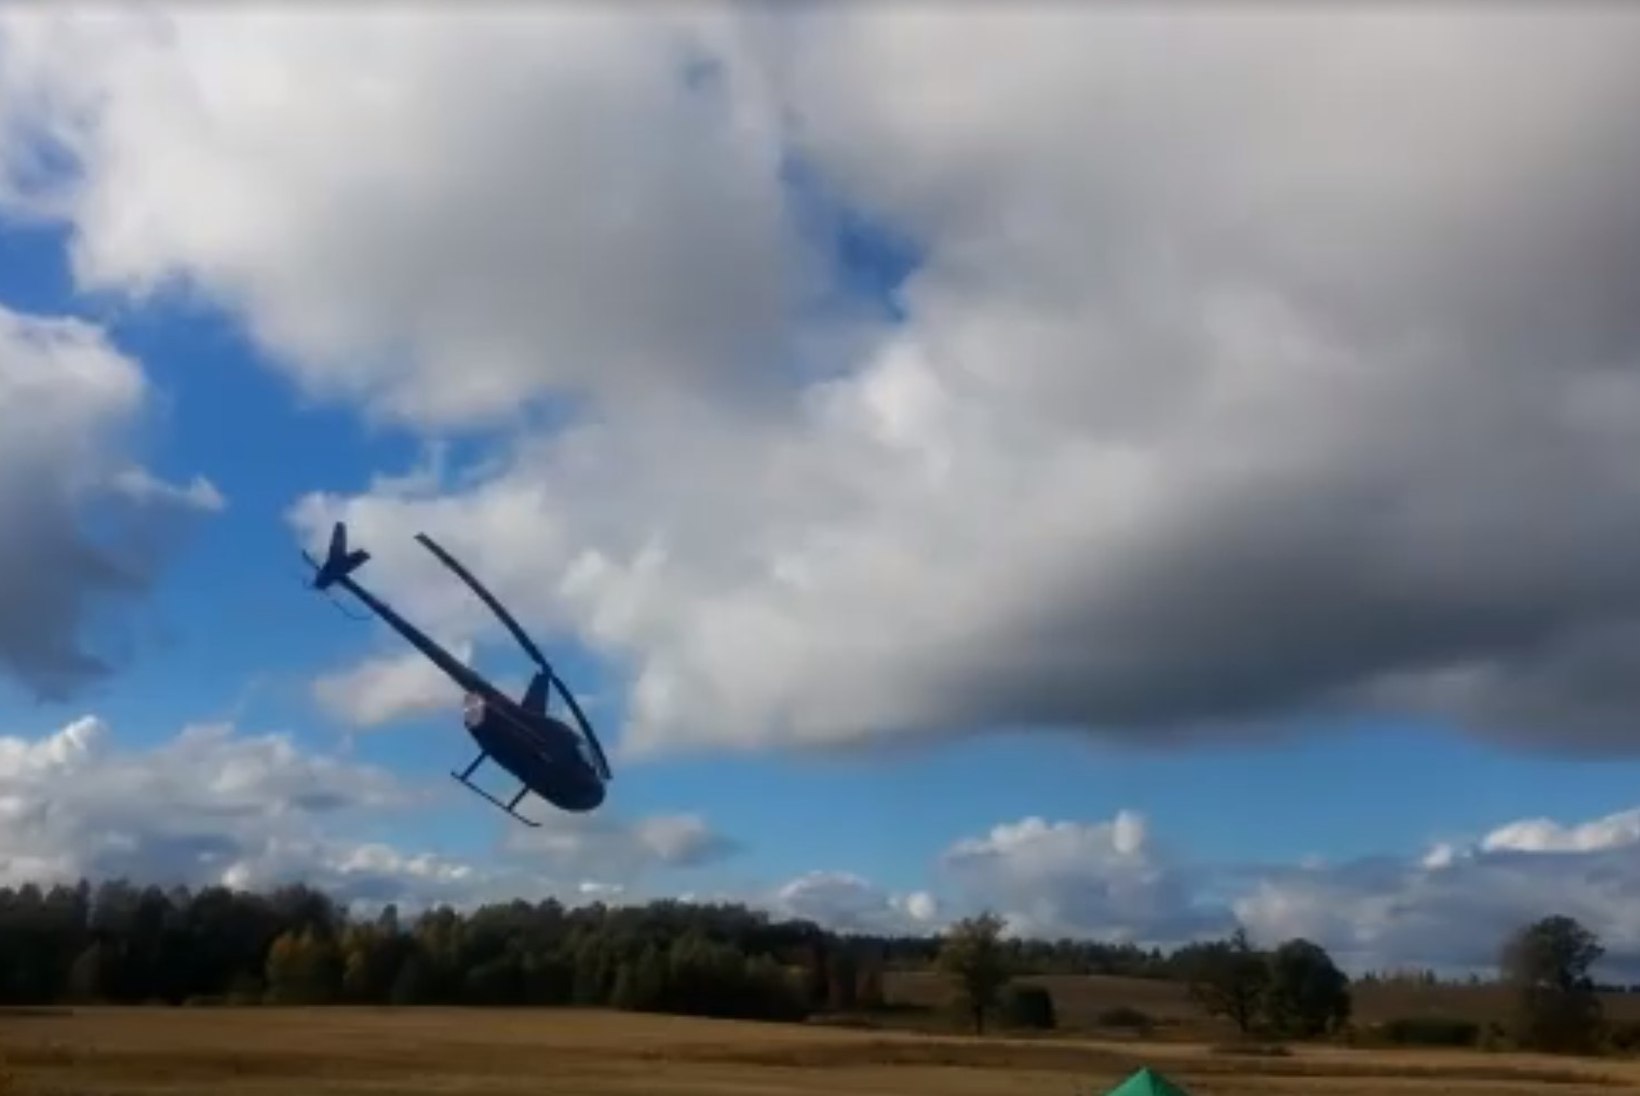 VIDEO | Lätis peetud rallil kukkus alla helikopter, vähemalt üks inimene hukkus